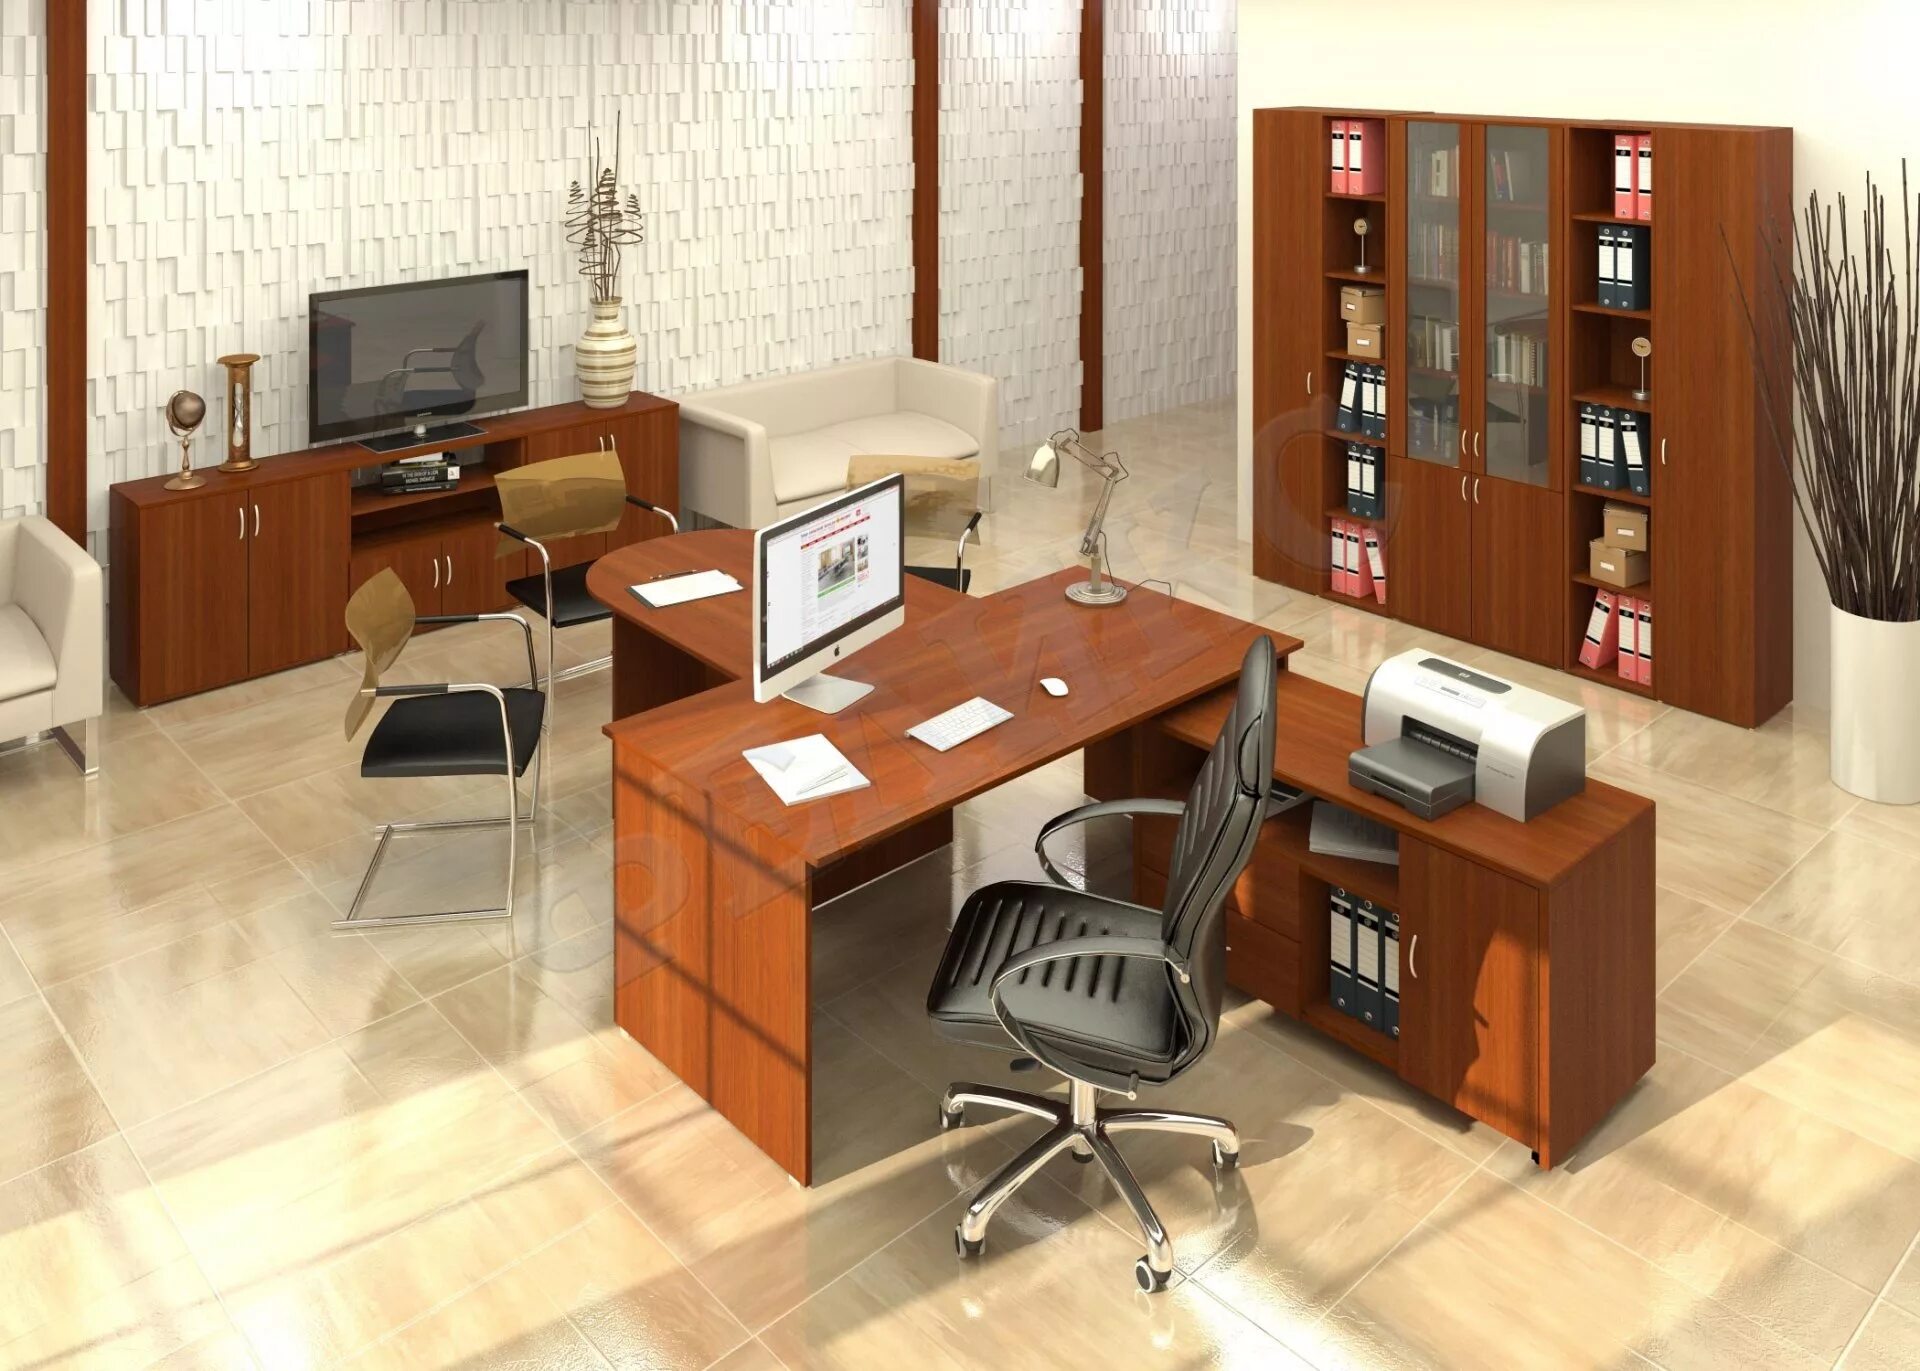 Система м. Офисная мебель Феликс. Мебель для кабинета директора фирмы. Расстановка мебели в кабинете начальника. Офисная мебель орех.